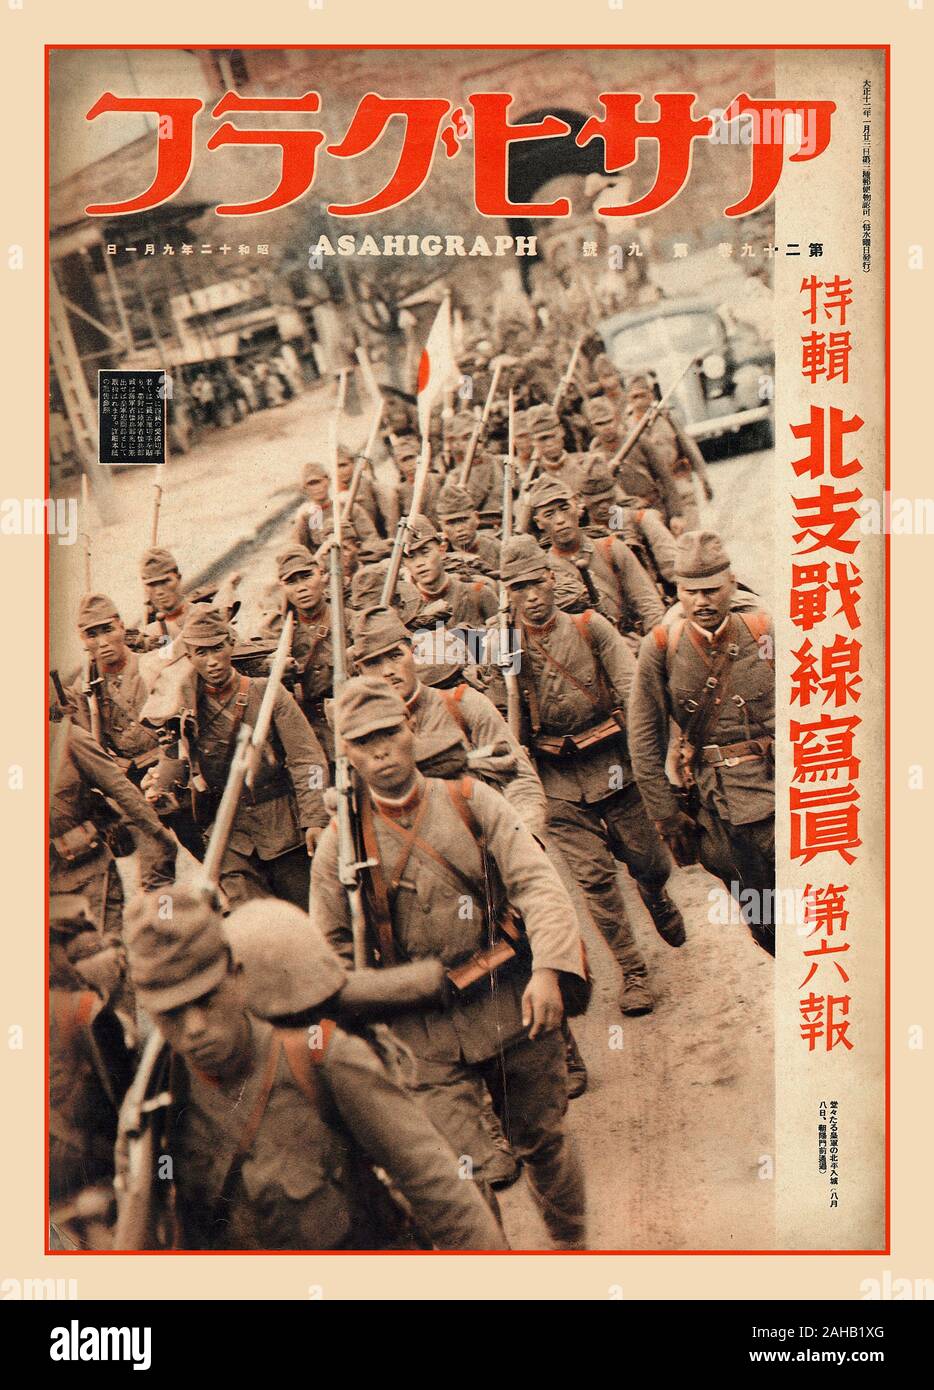 ASAHIGRAPH Vintage photo page des troupes japonaises marchant dans le nord de la Chine 1 sept 1937 Numéro de la publication japonaise Asahigraph, avec des troupes japonaises marchant dans le nord de la Chine de Beijing comme préparation à la Seconde Guerre mondiale Banque D'Images